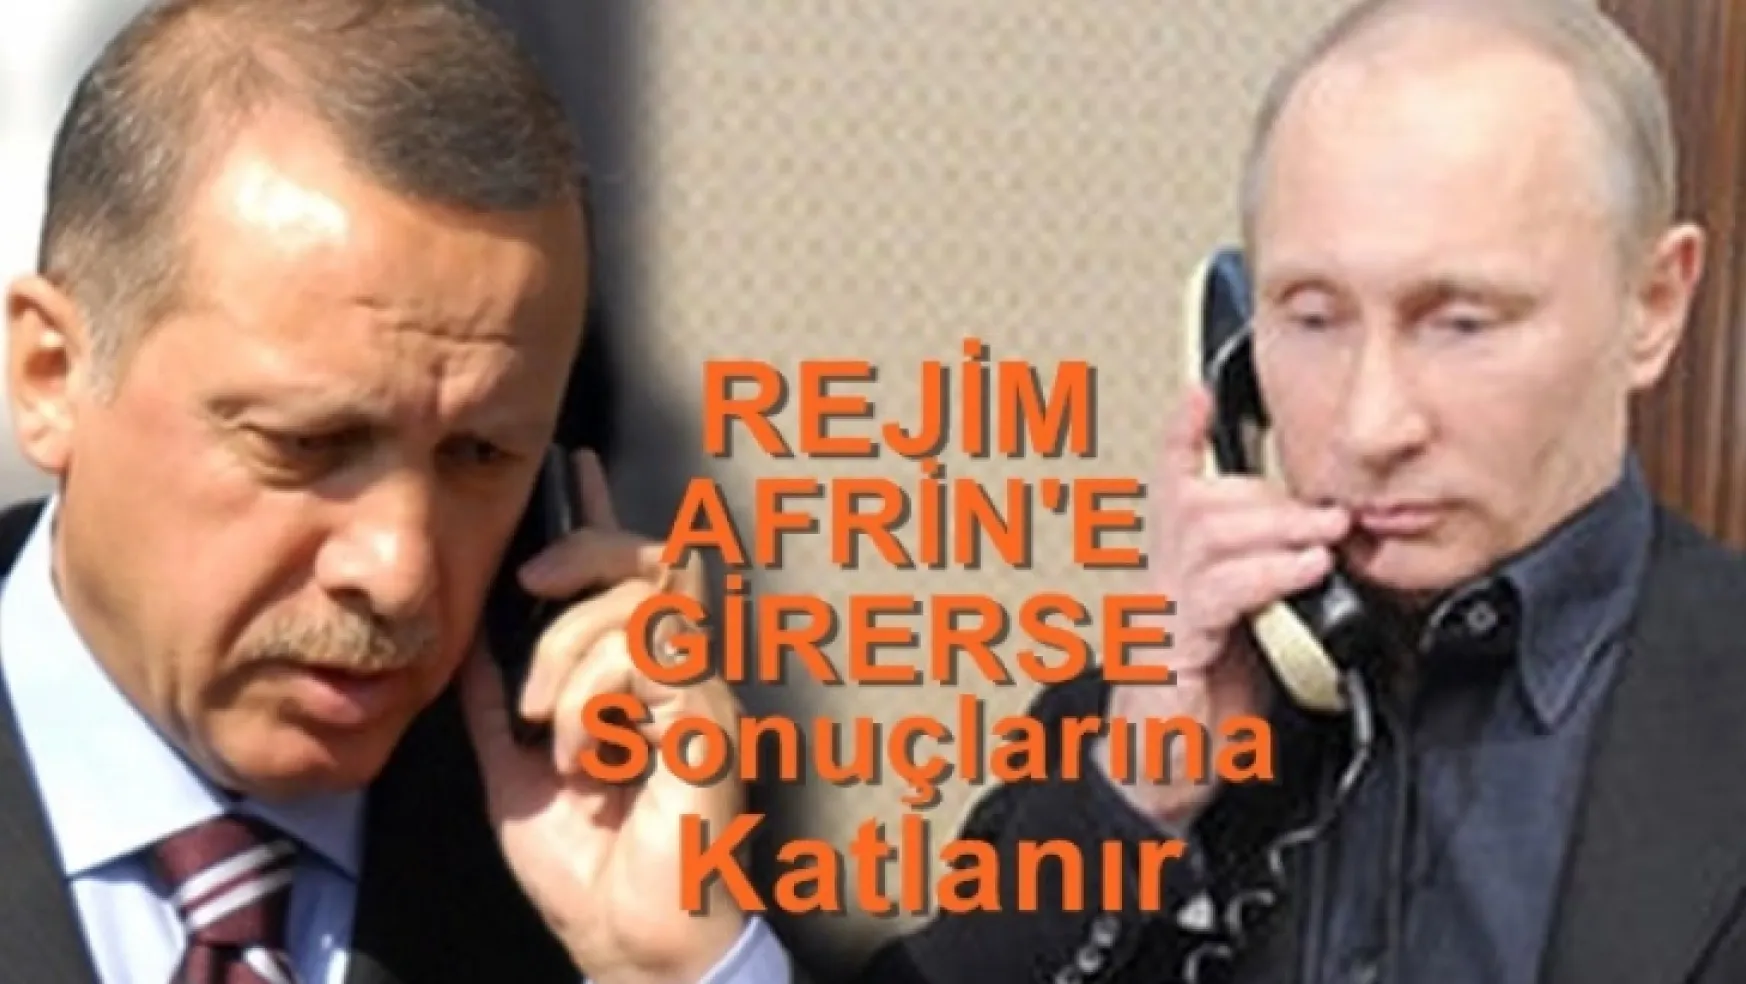 Erdoğan, Putin'e Rejim Afrin'e girerse sonuçlarına katlanır